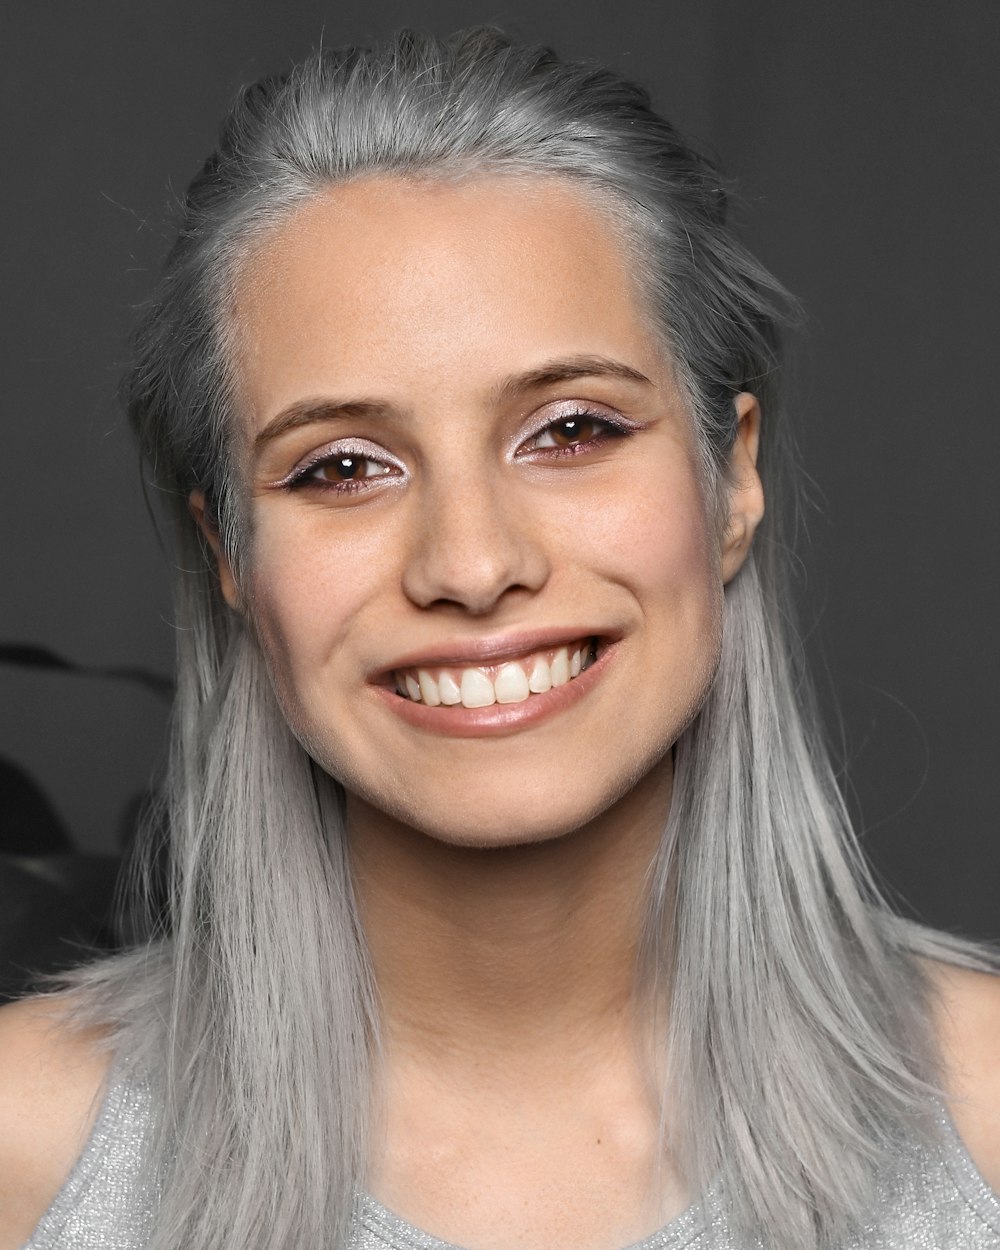 Una donna con i capelli grigi che sorride alla macchina fotografica